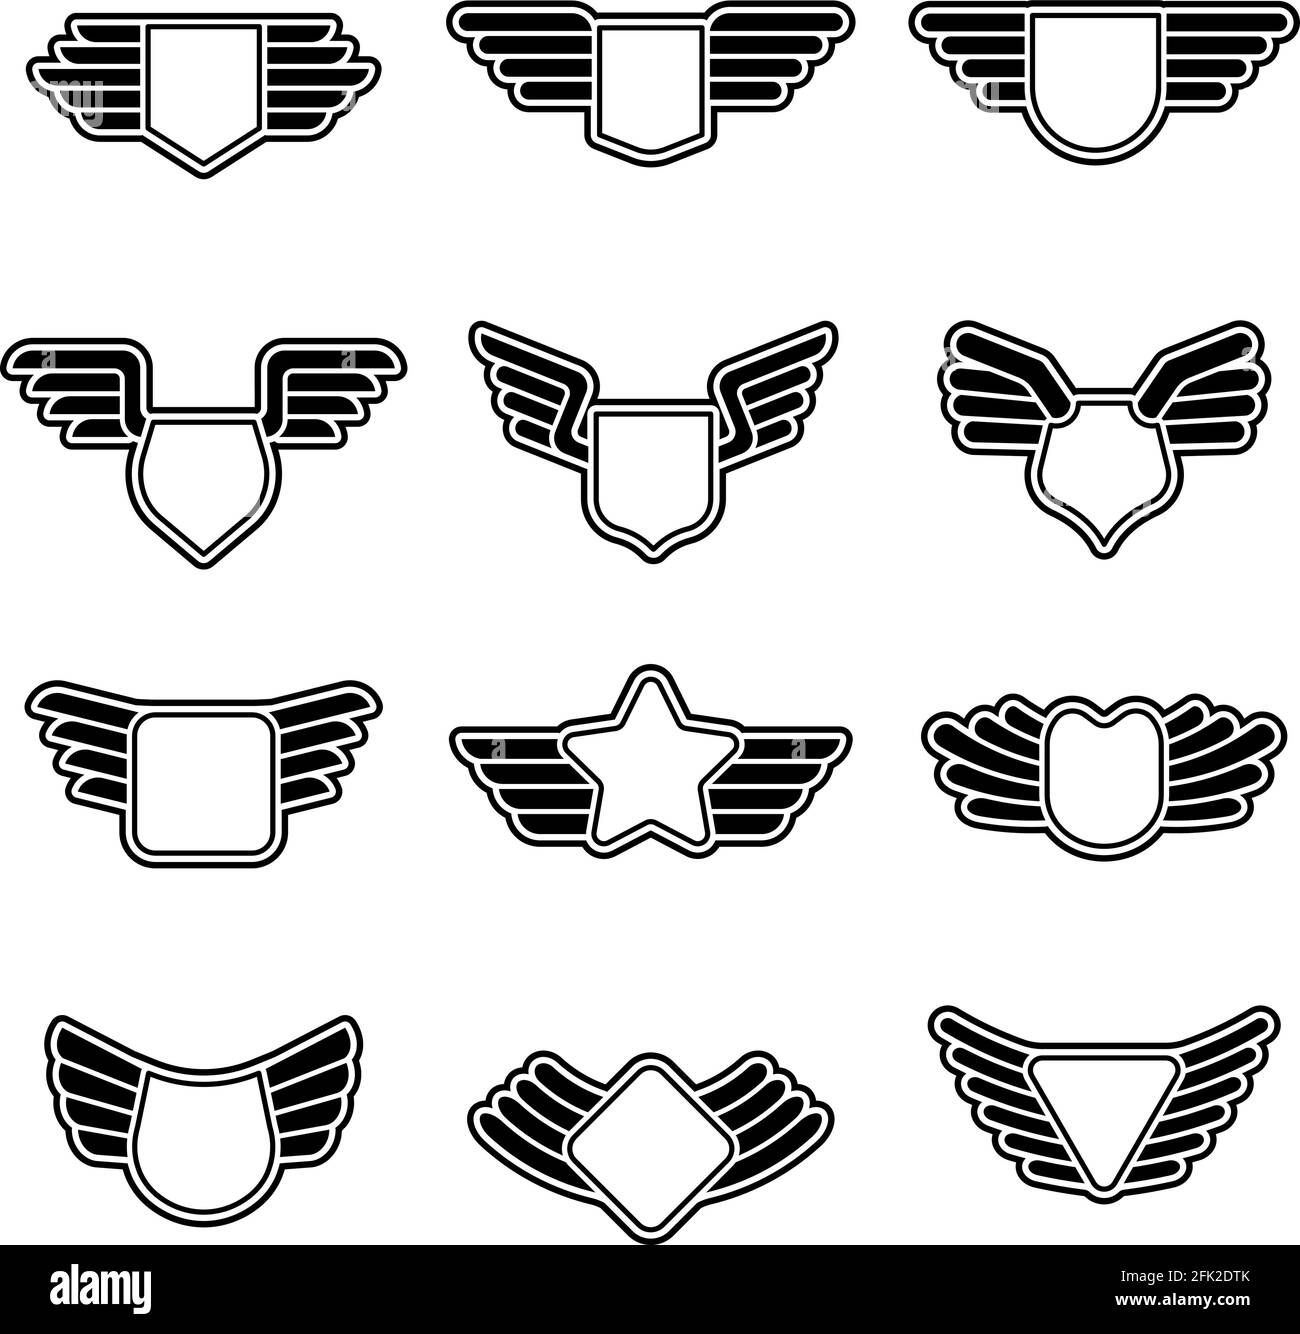 Distintivi delle ali. Esercito geometrico stilizzato scudi emblemi di aviazione vuota con simboli di ali vettore insegne corporate Illustrazione Vettoriale